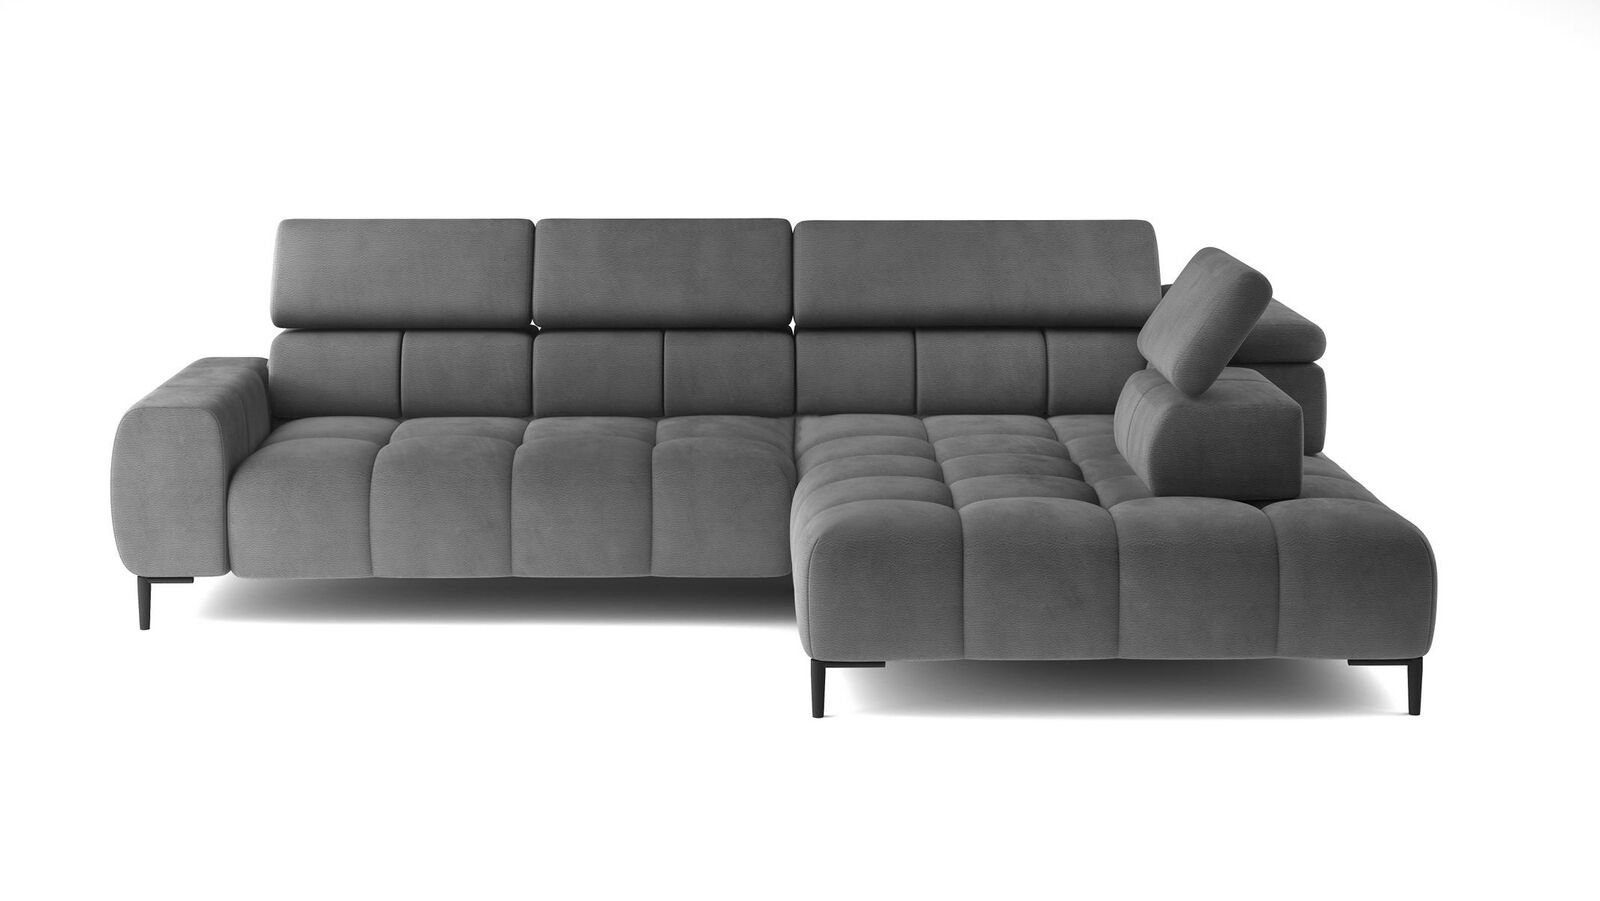 JVmoebel Ecksofa Wohnlandschaft Couch in Europe Made Sofa Ecksofa Neu, L-Form Textil